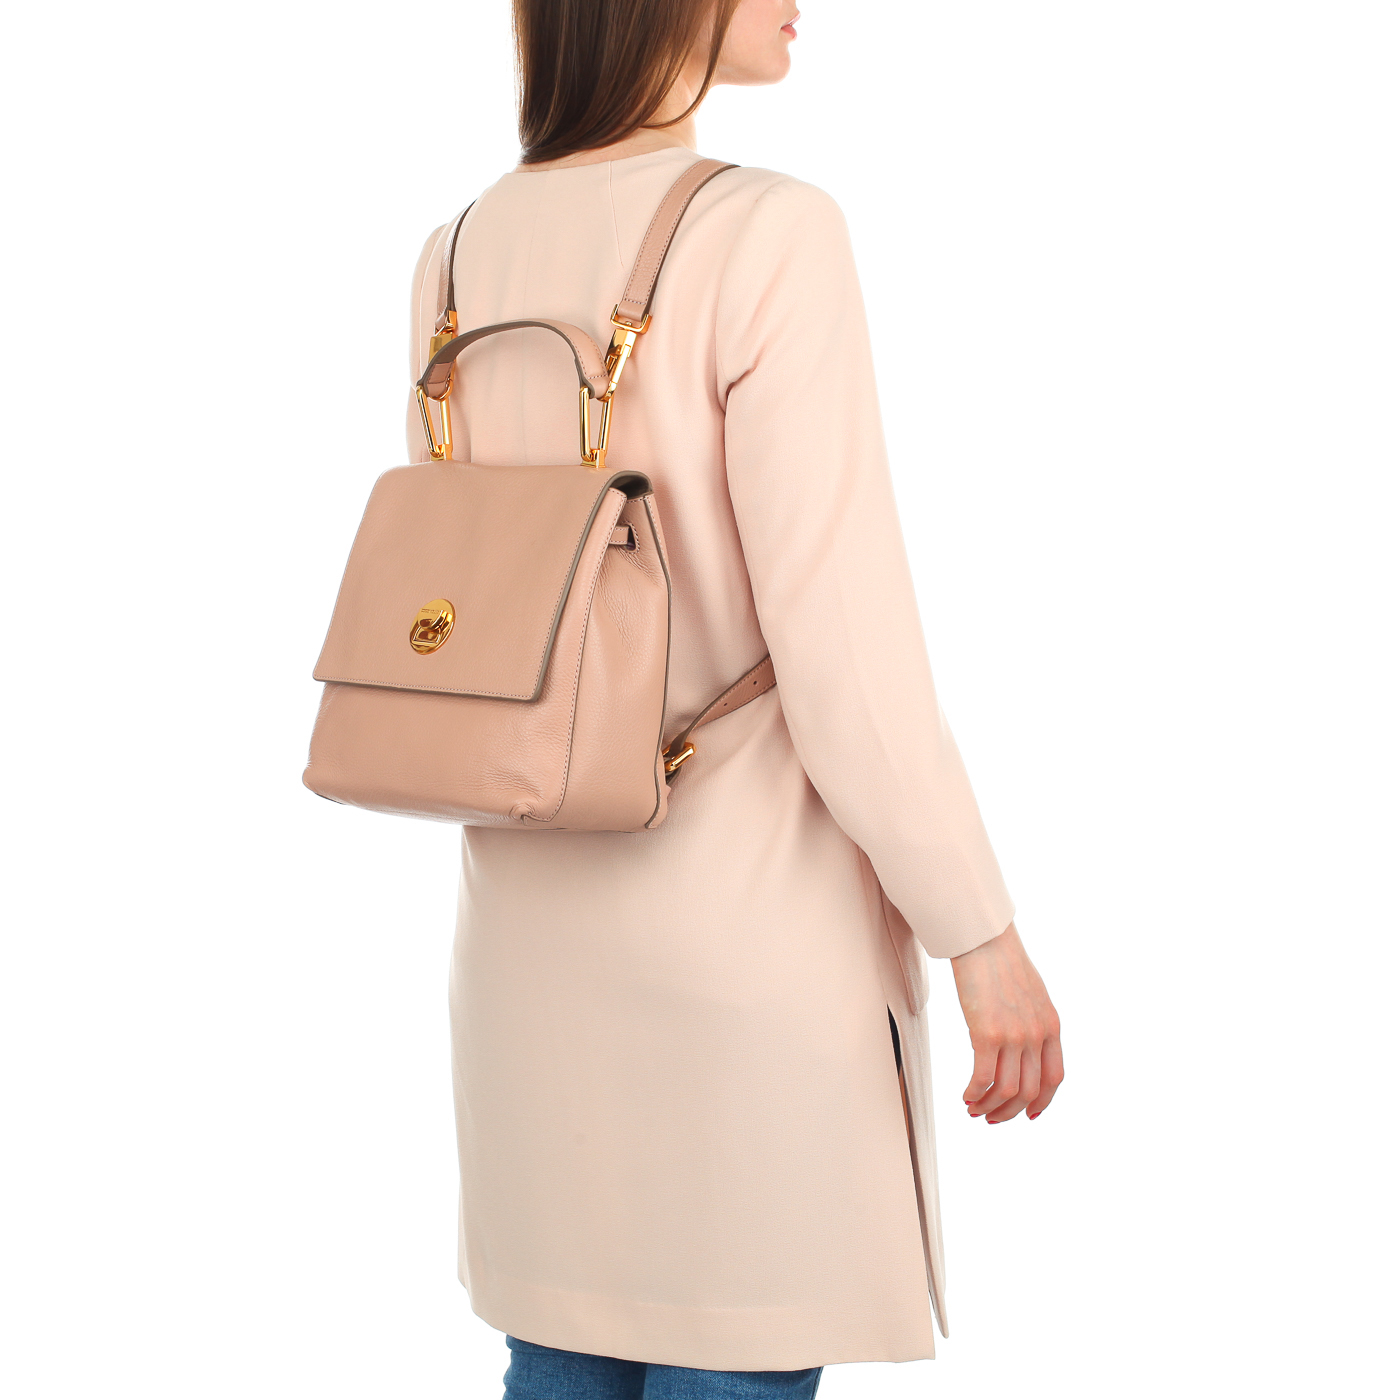 Кожаный женский рюкзак с откидным клапаном Coccinelle Liya